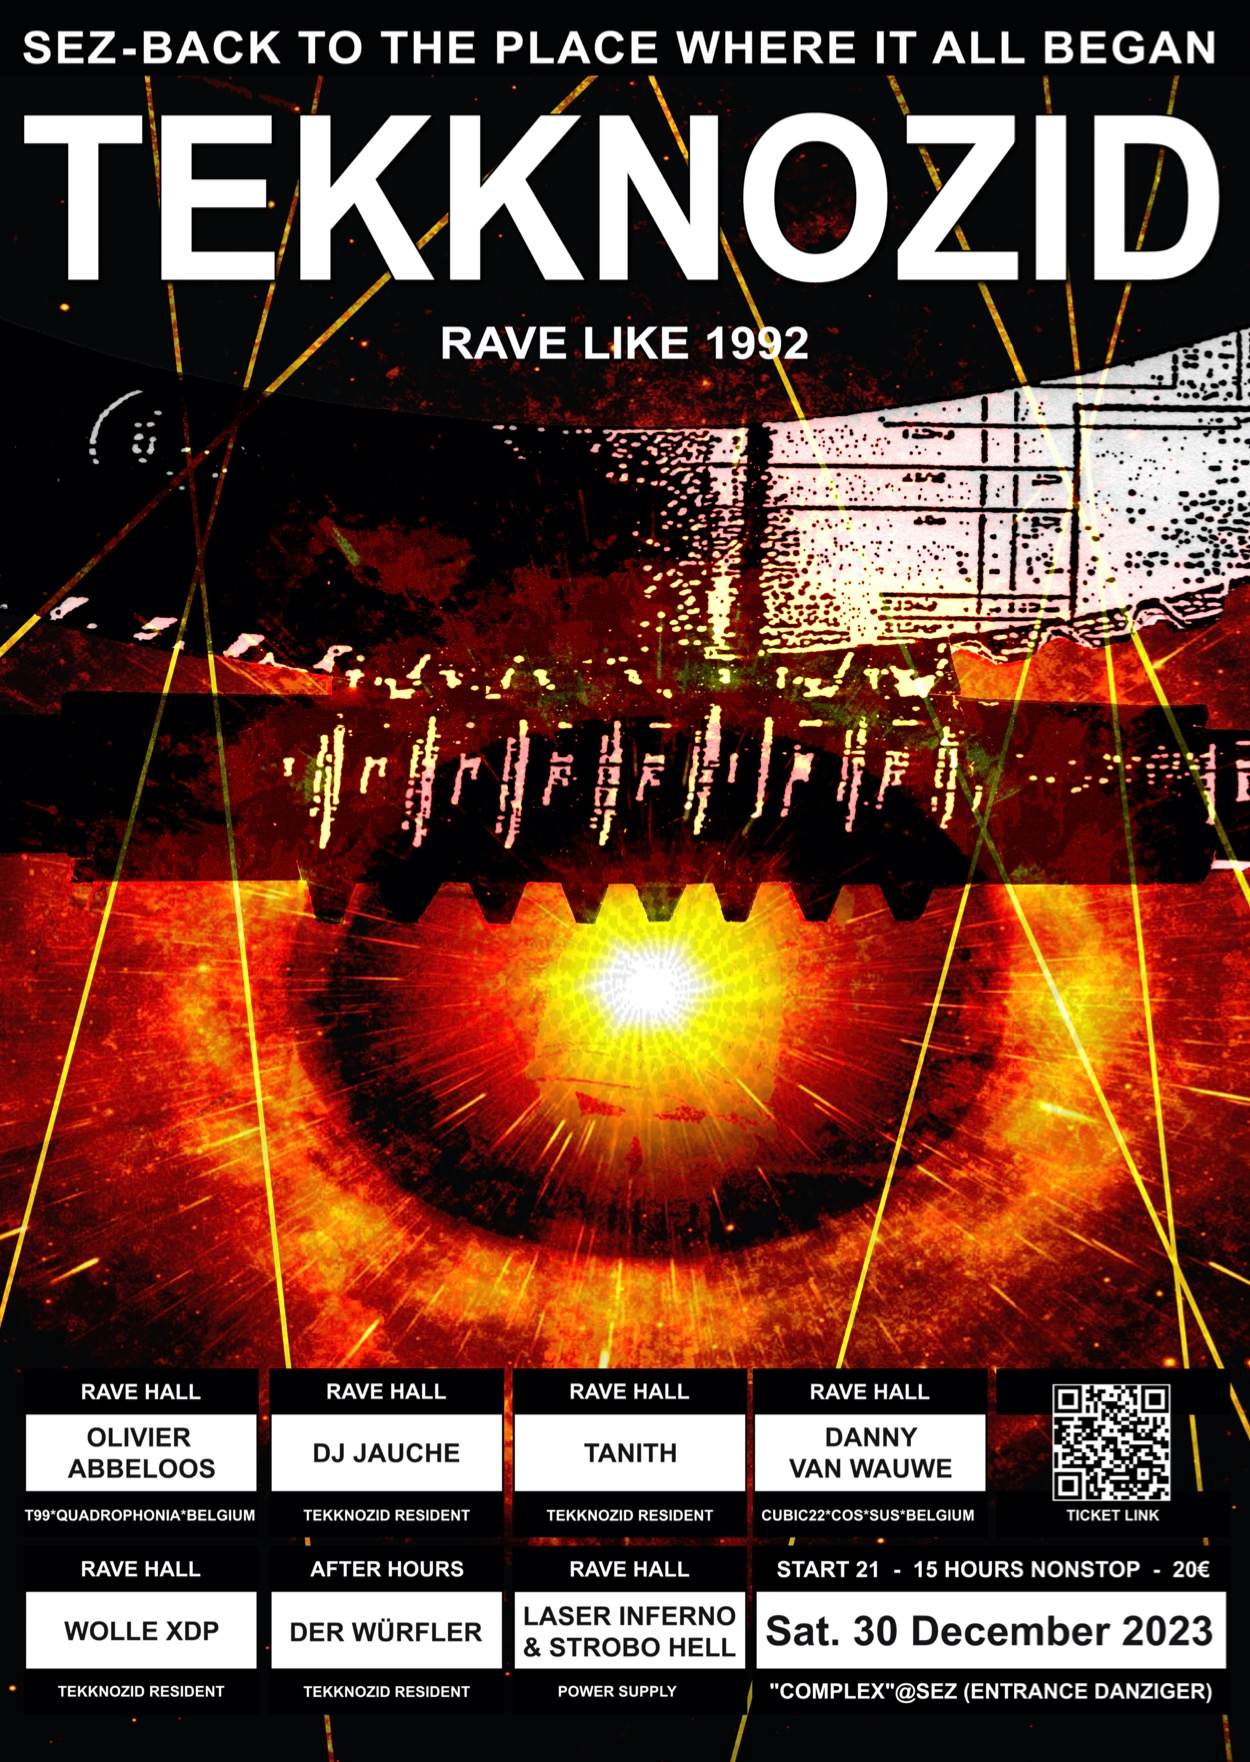 TEKKNOZID - RAVE LIKE 1992 - フライヤー表